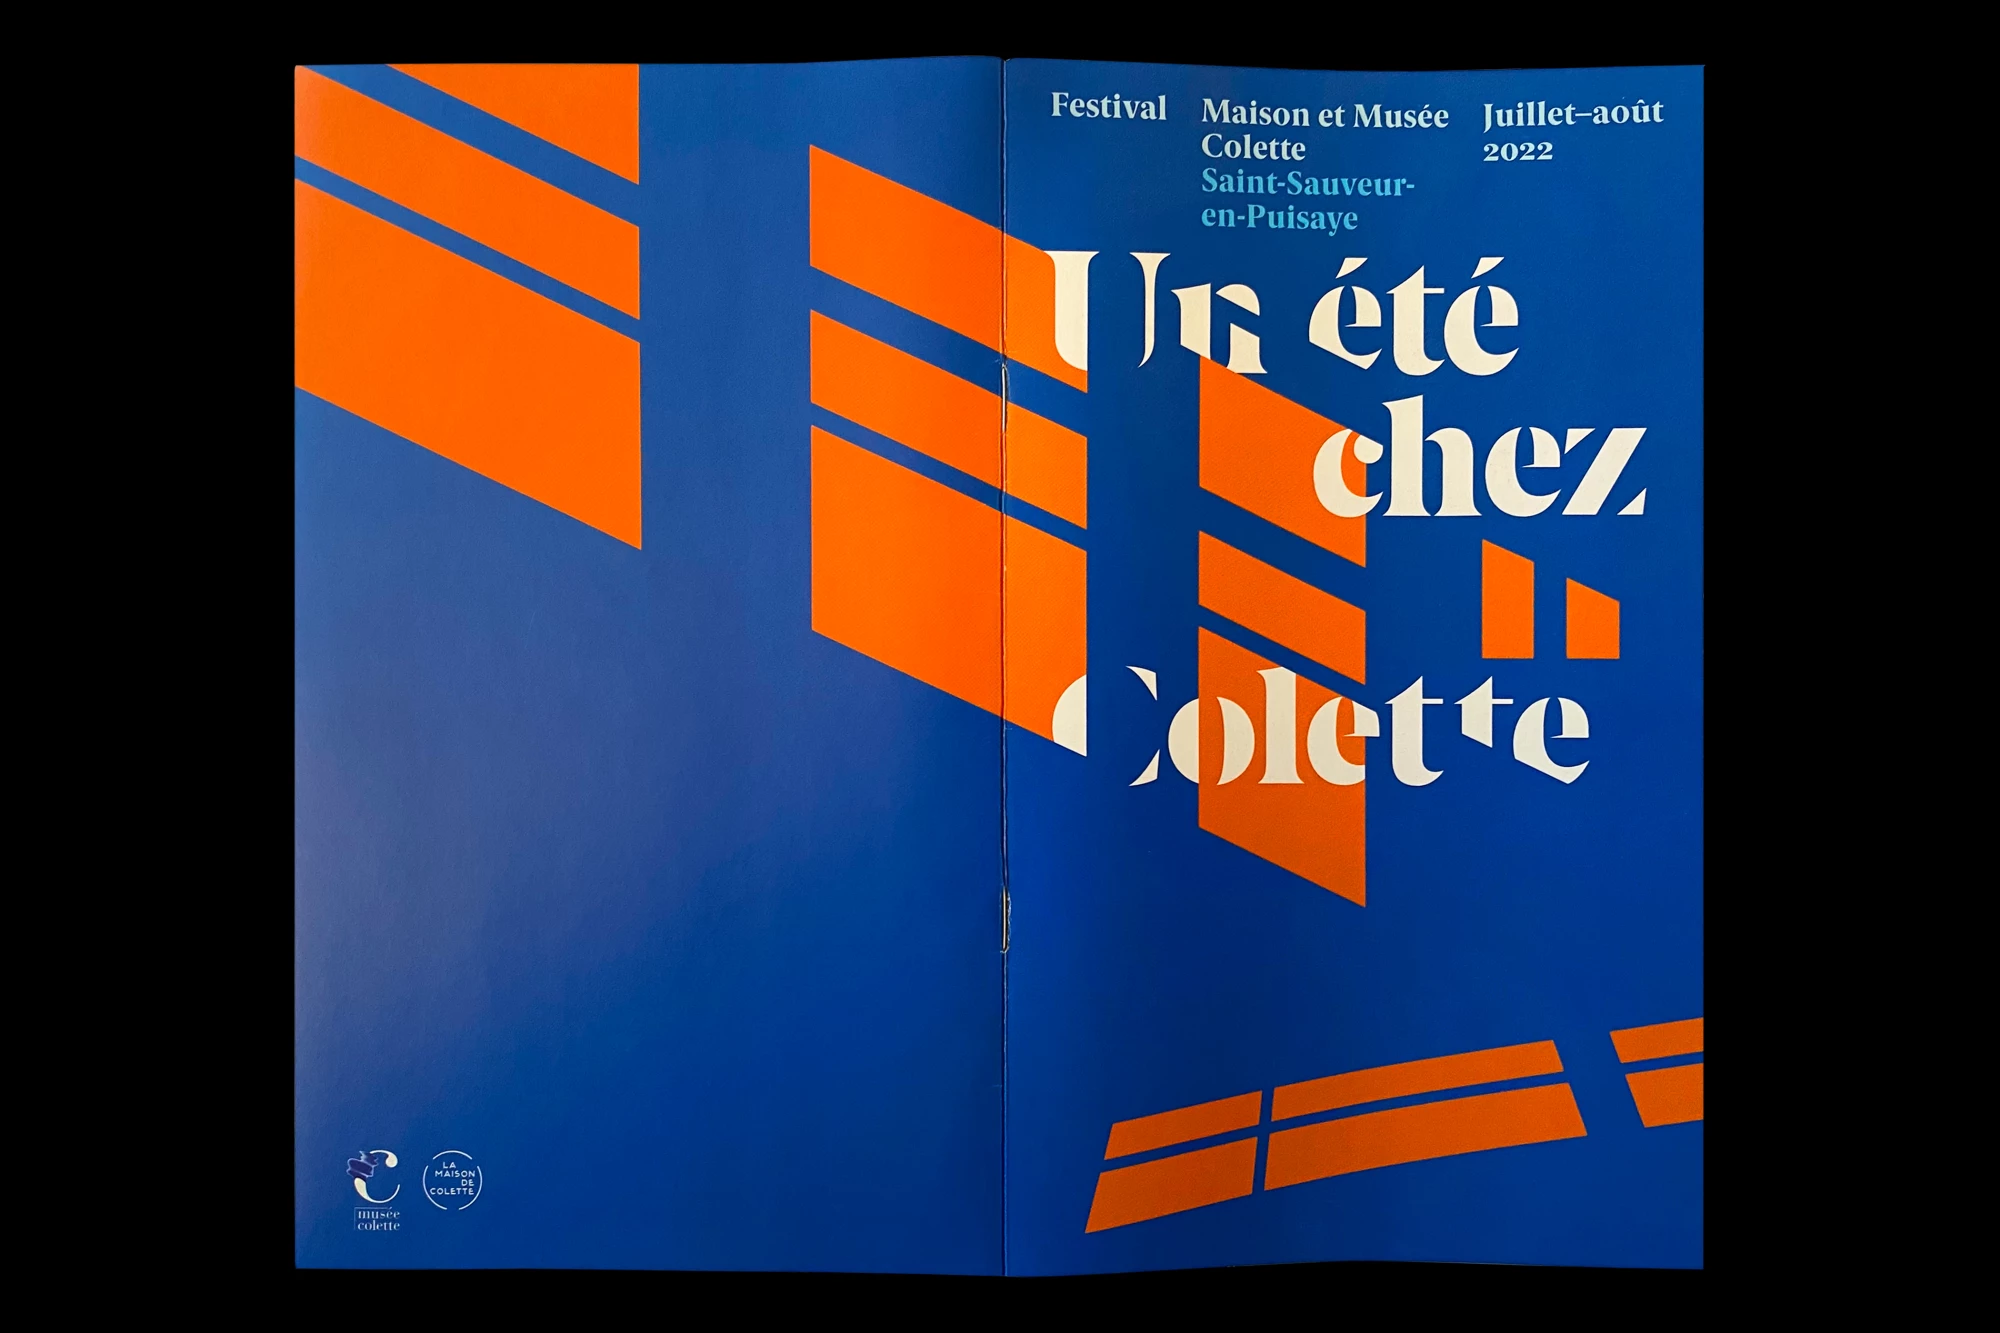 Léo Grunstein - Un été chez Colette, 2022, Maison de Colette, Affiche, Édition, Identité, 2022